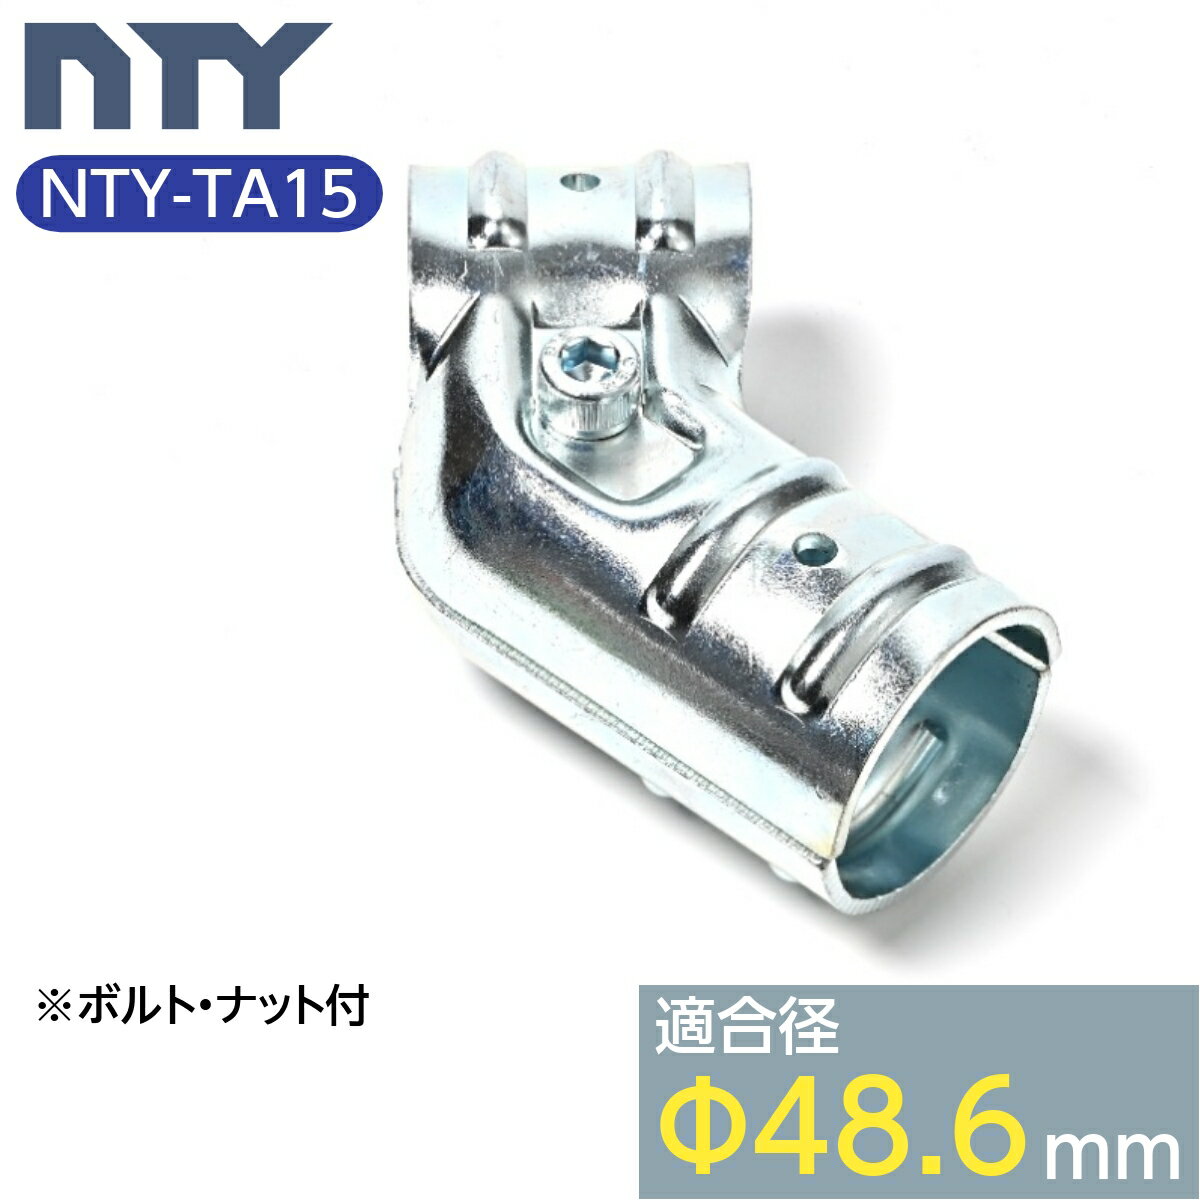 PǃpCv WCg NTY-TA15 48.6mmp P pCv Nv Pǐڑ ، WCg  q DIY